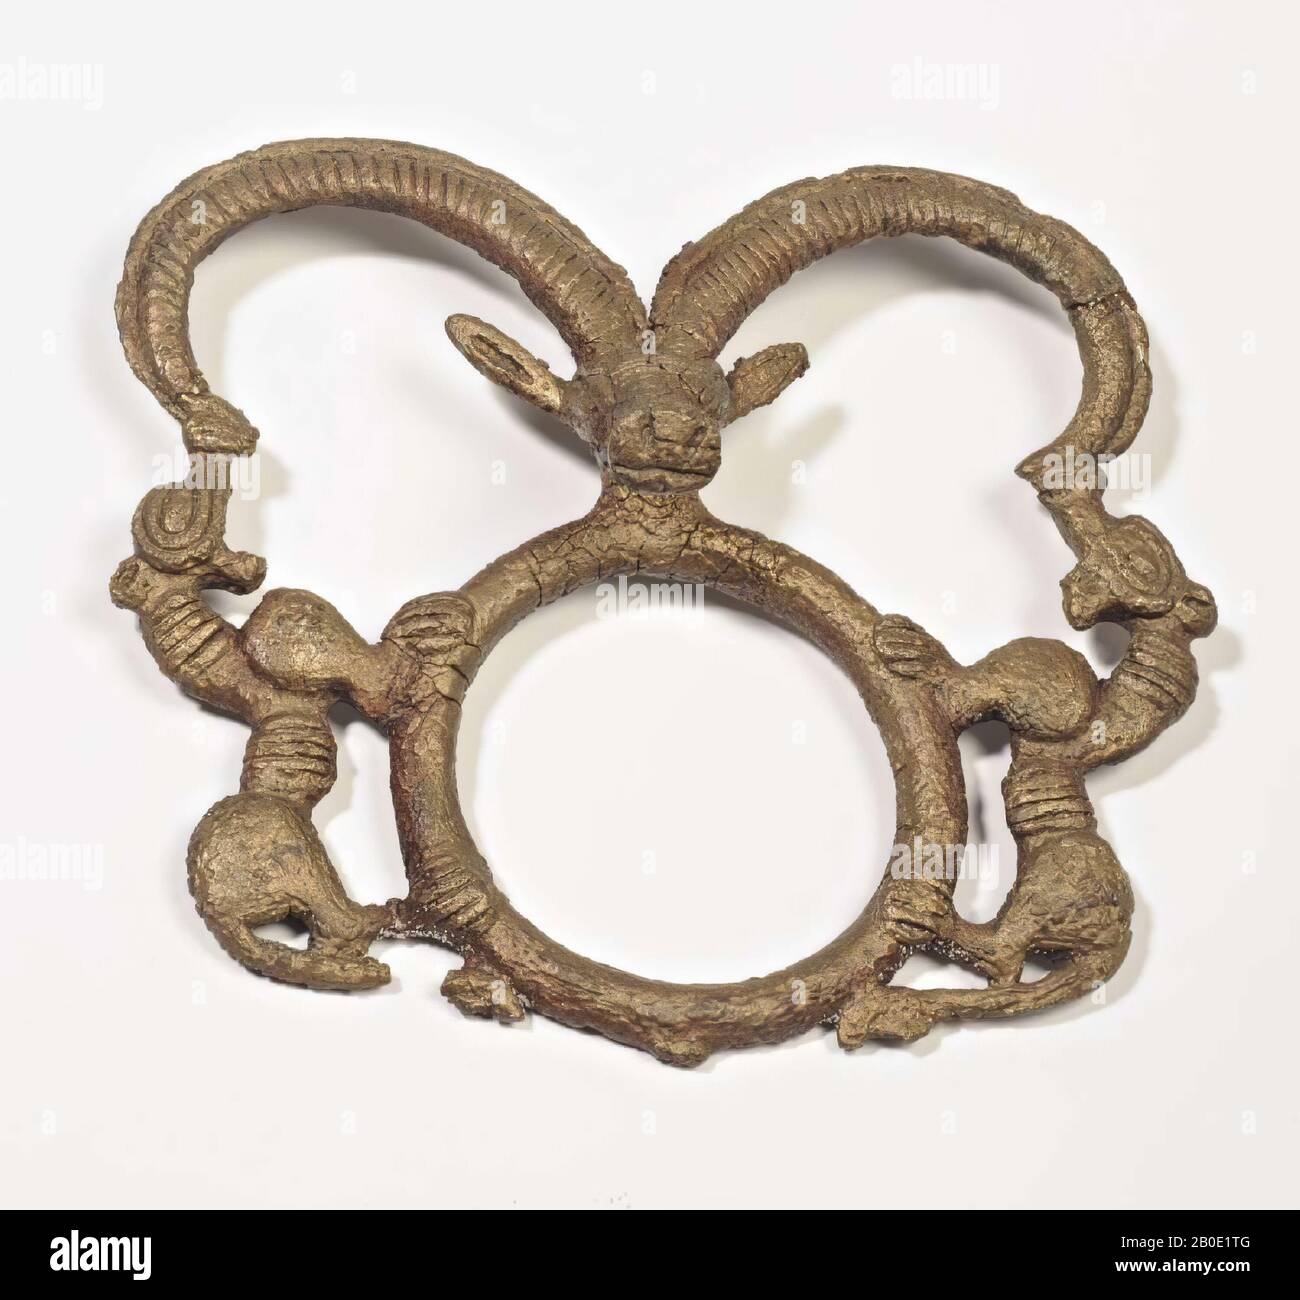 Un anello di bronzo di un imbragatura adornato in cima con una testa di gazzella con corna lunghe e a sinistra e a destra con due leoni simmetricamente posizionati., imbracatura a cavallo, metallo, bronzo, H 9 cm, W 10,8 cm, Iran Foto Stock